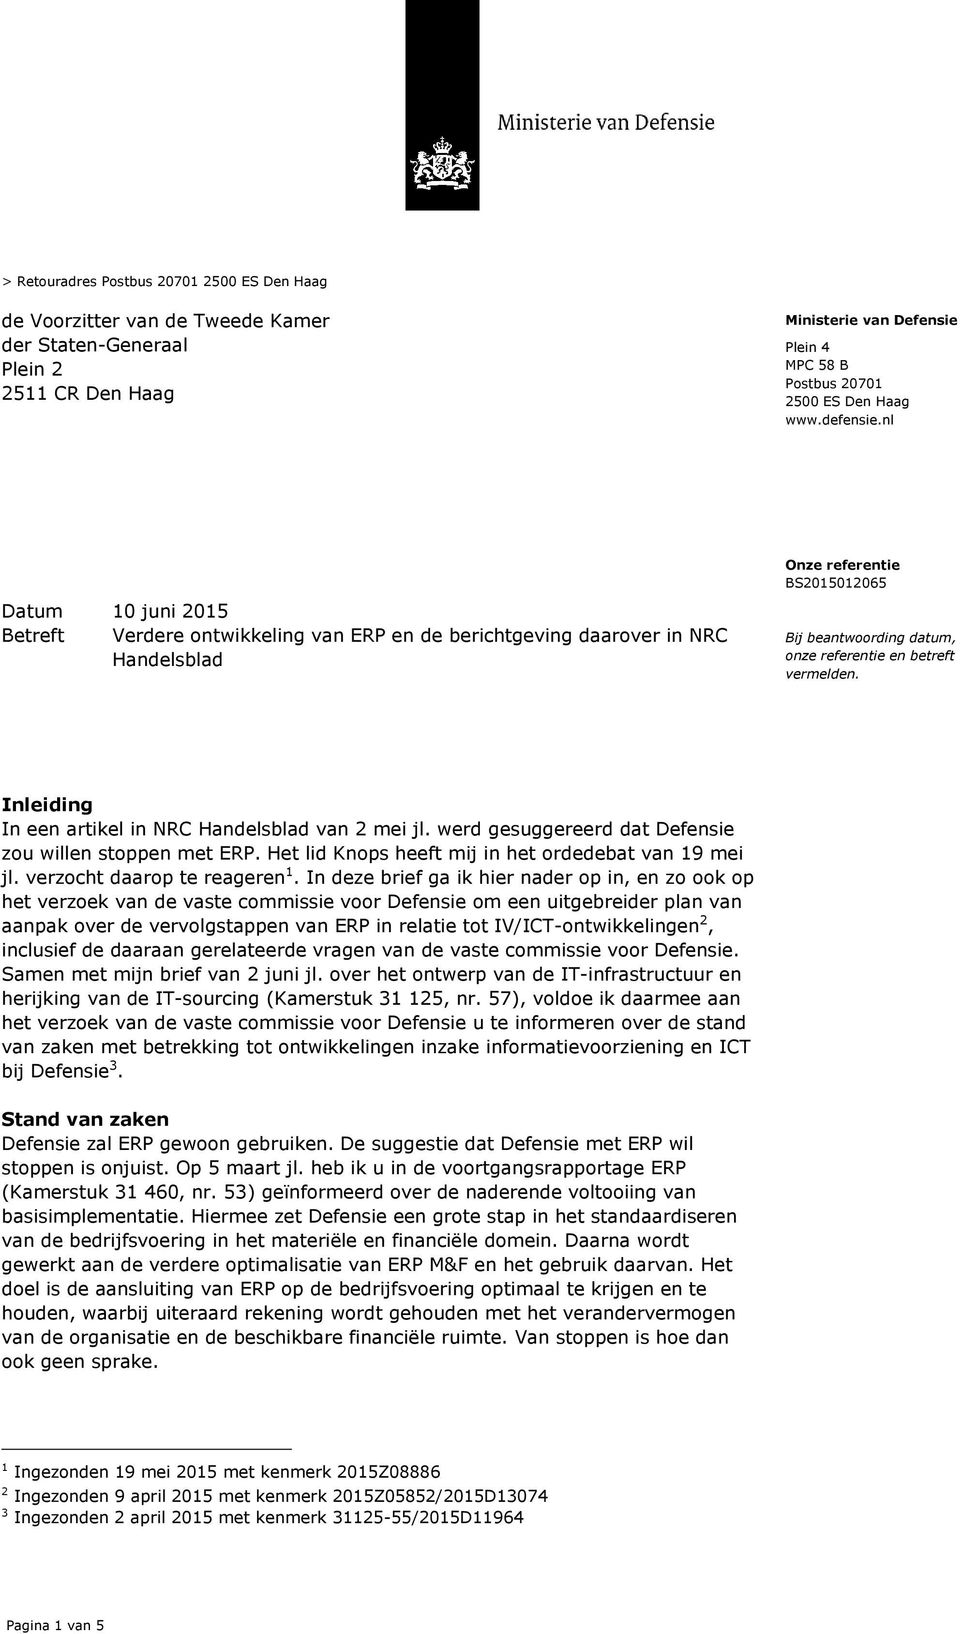 nl Datum 10 juni 2015 Betreft Verdere ontwikkeling van ERP en de berichtgeving daarover in NRC Handelsblad Onze referentie BS2015012065 Bij beantwoording datum, onze referentie en betreft vermelden.